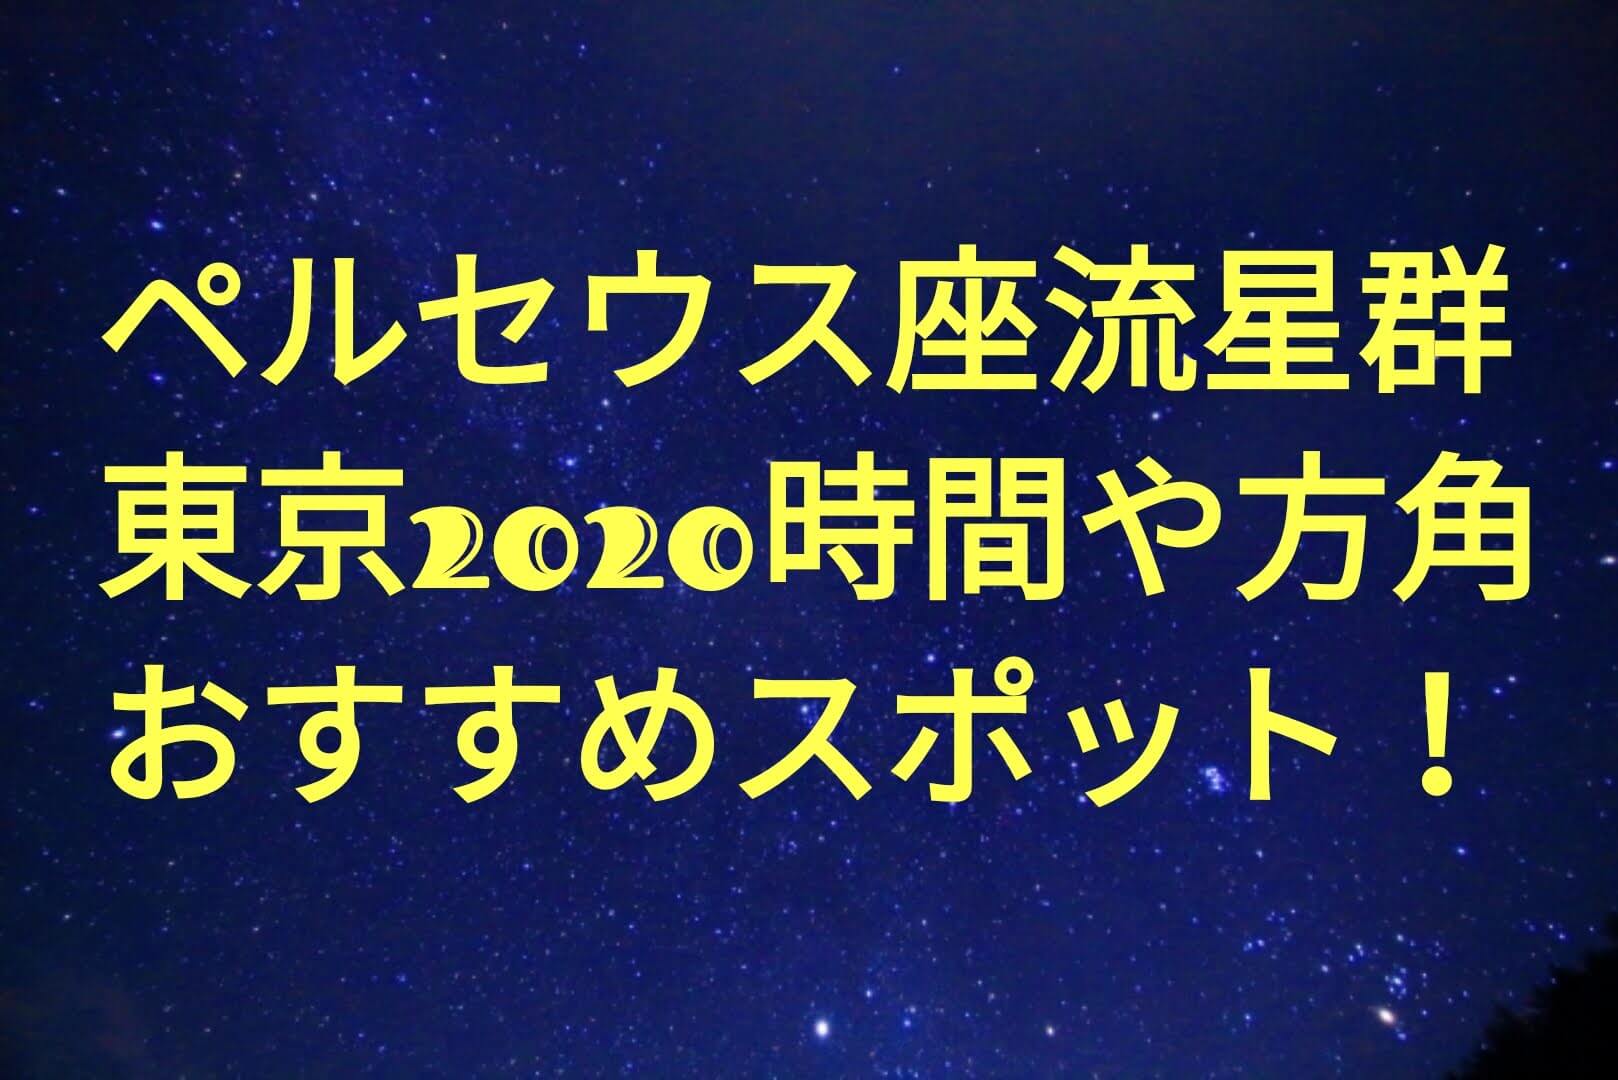 ペルセウス座流星群東京のピーク時間や方角は おすすめスポット 観測場所も パパママハック